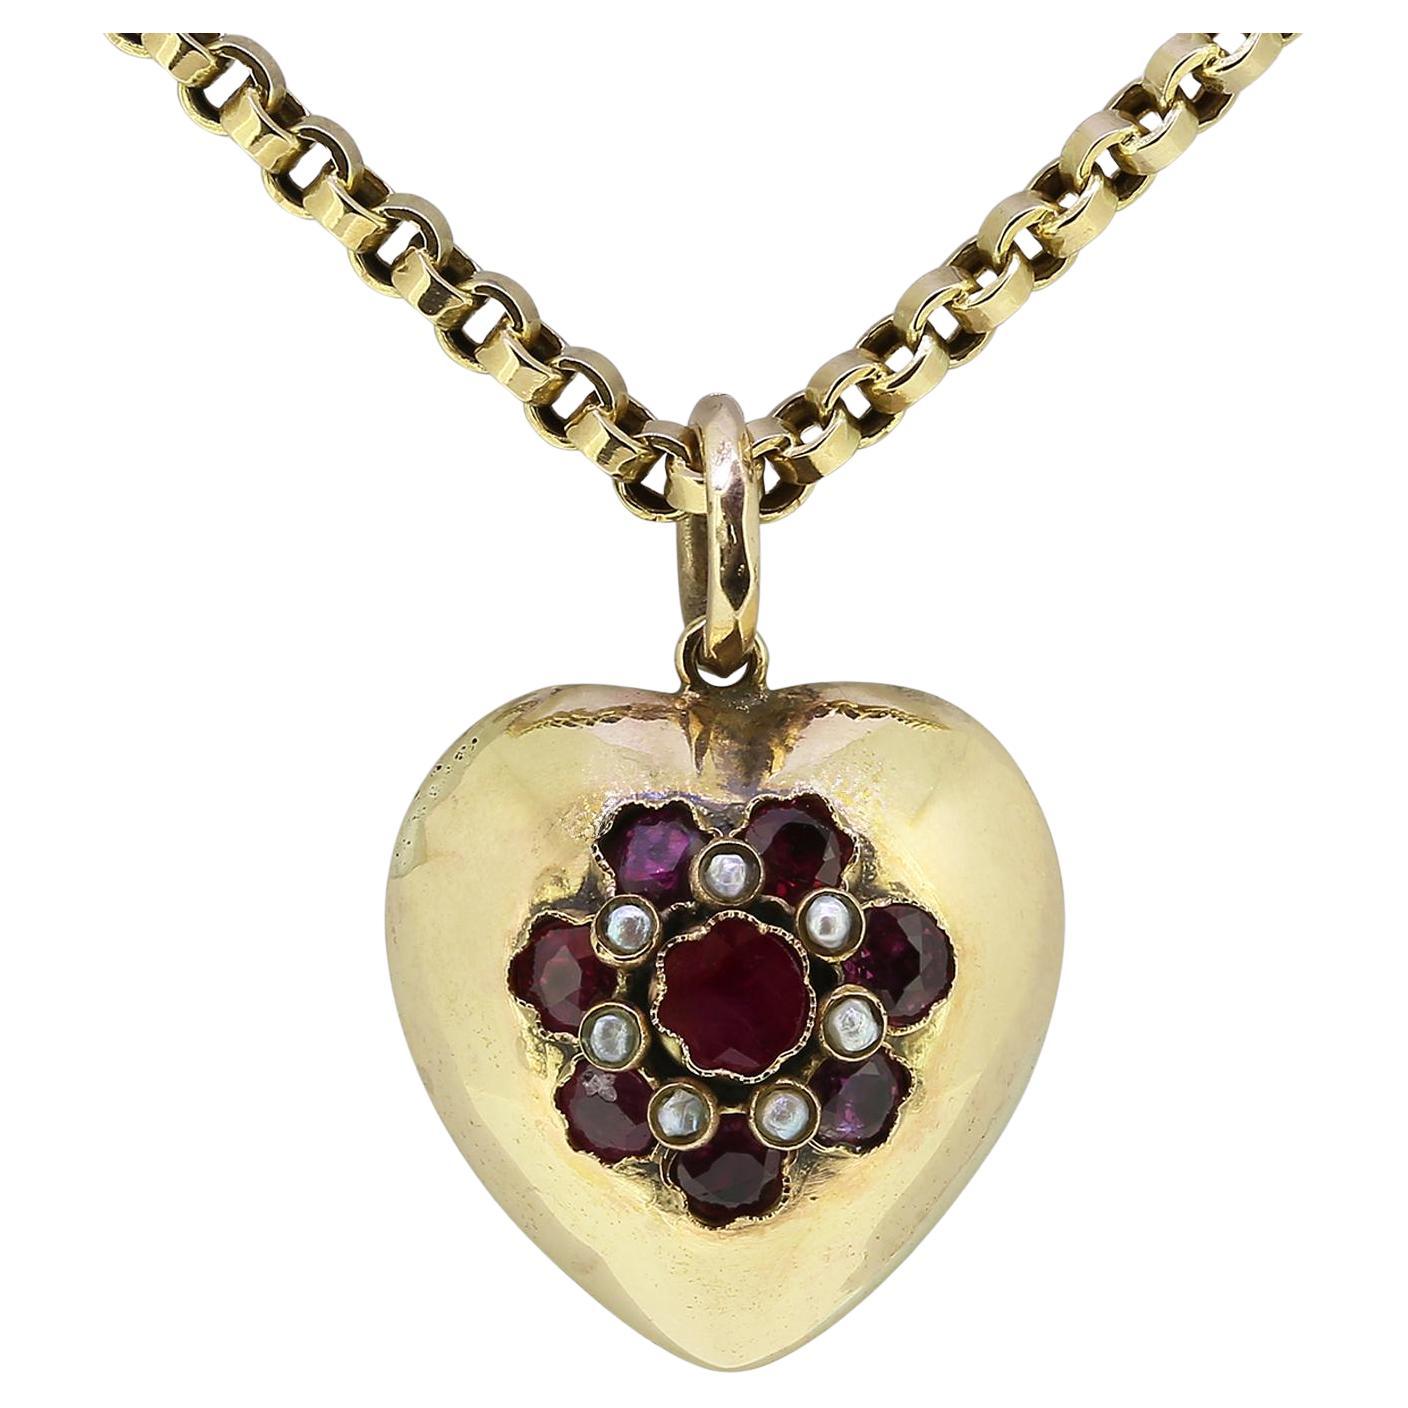 Collier vintage avec pendentif en forme de cœur en rubis et perles